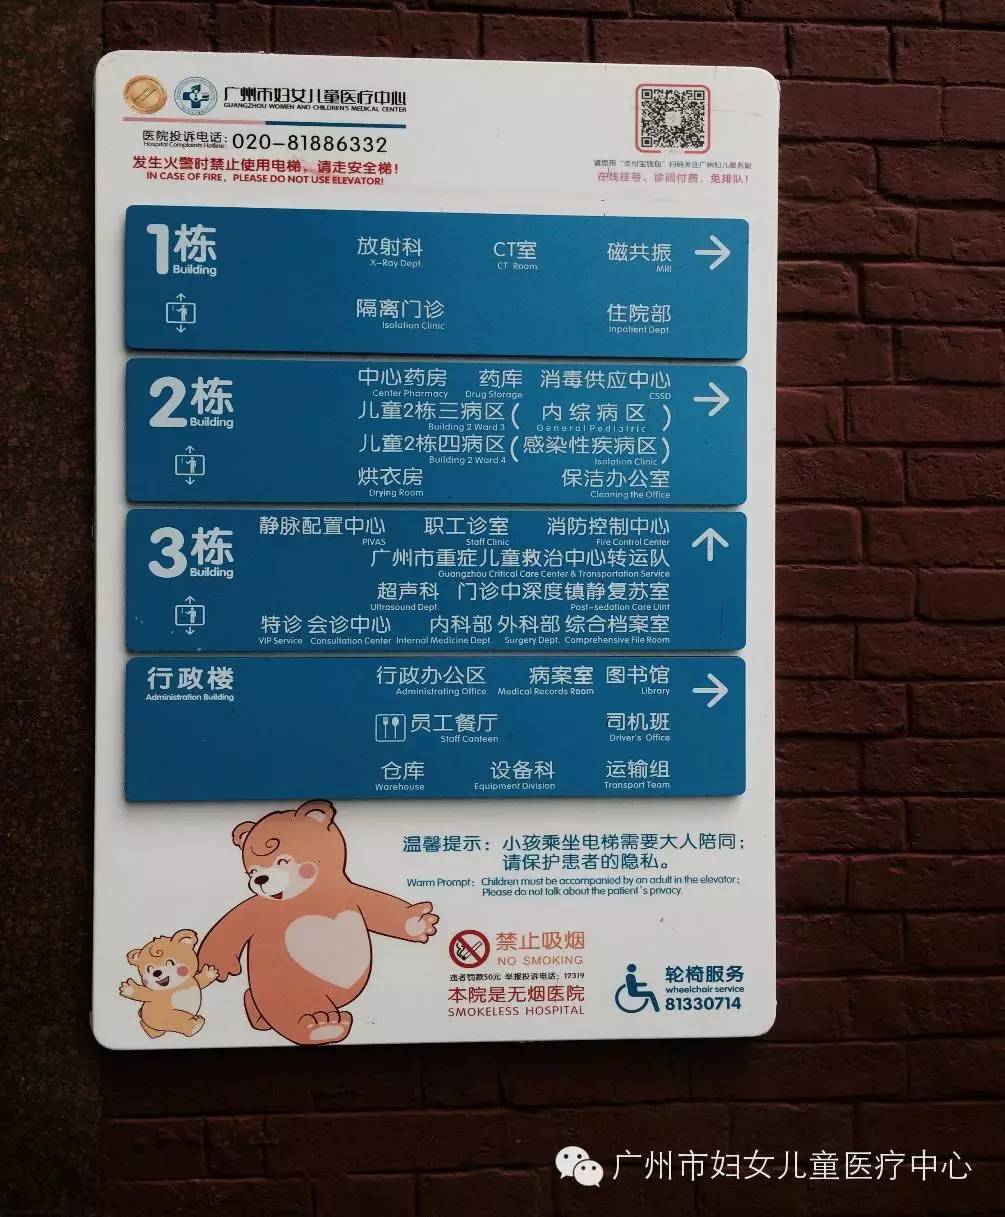 【就诊攻略】广州市妇女儿童医疗中心(儿童医